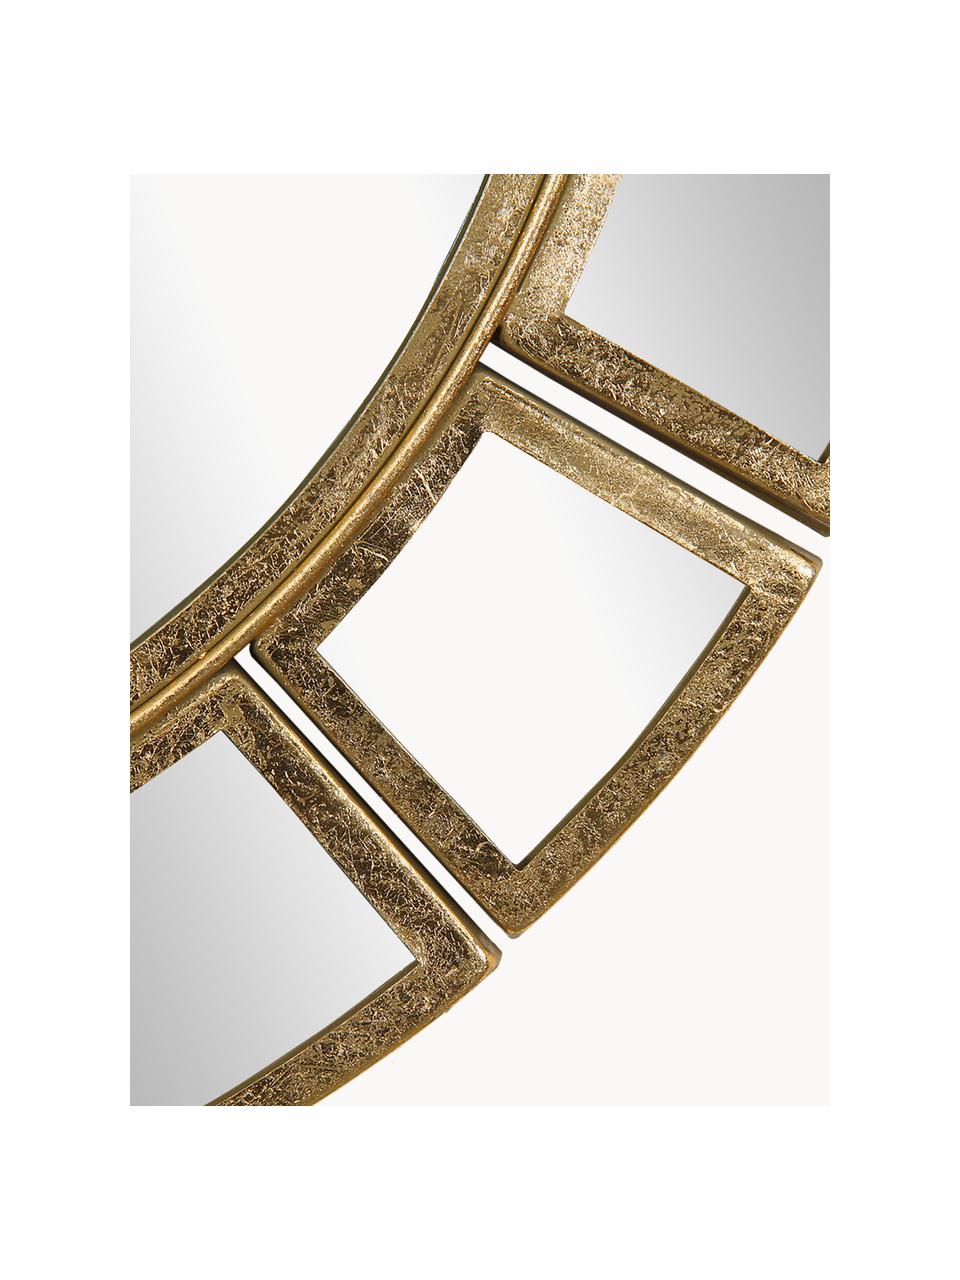 Ronde wandspiegel Dinus met messingkleurige metalen lijst, Lijst: vermessingd metaal, Messingkleurig, Ø 78 x D 2 cm